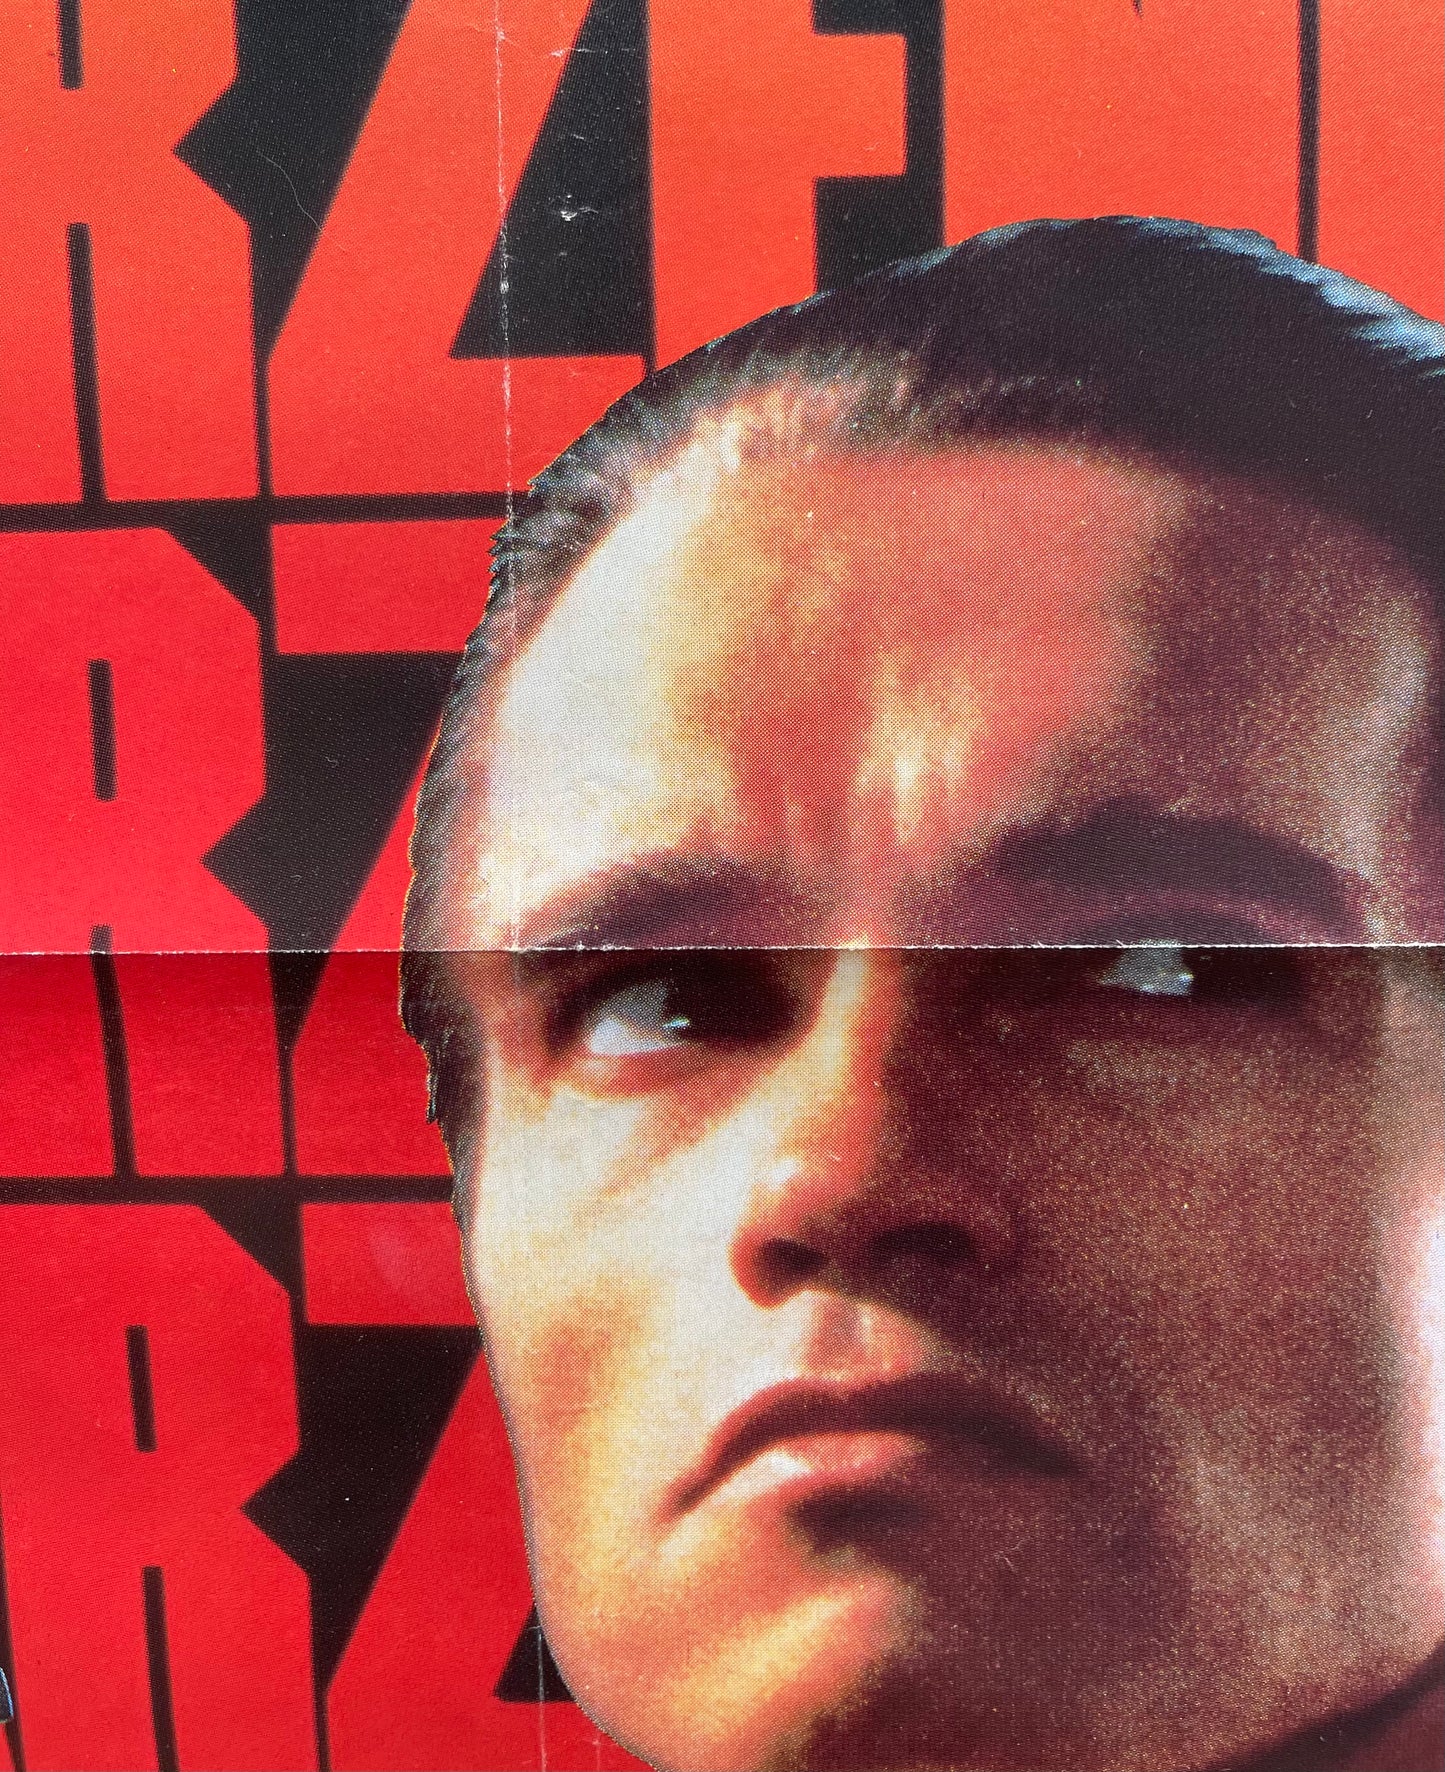 Raw Deal (1986) Arnold Schwarzenegger - One Sheet